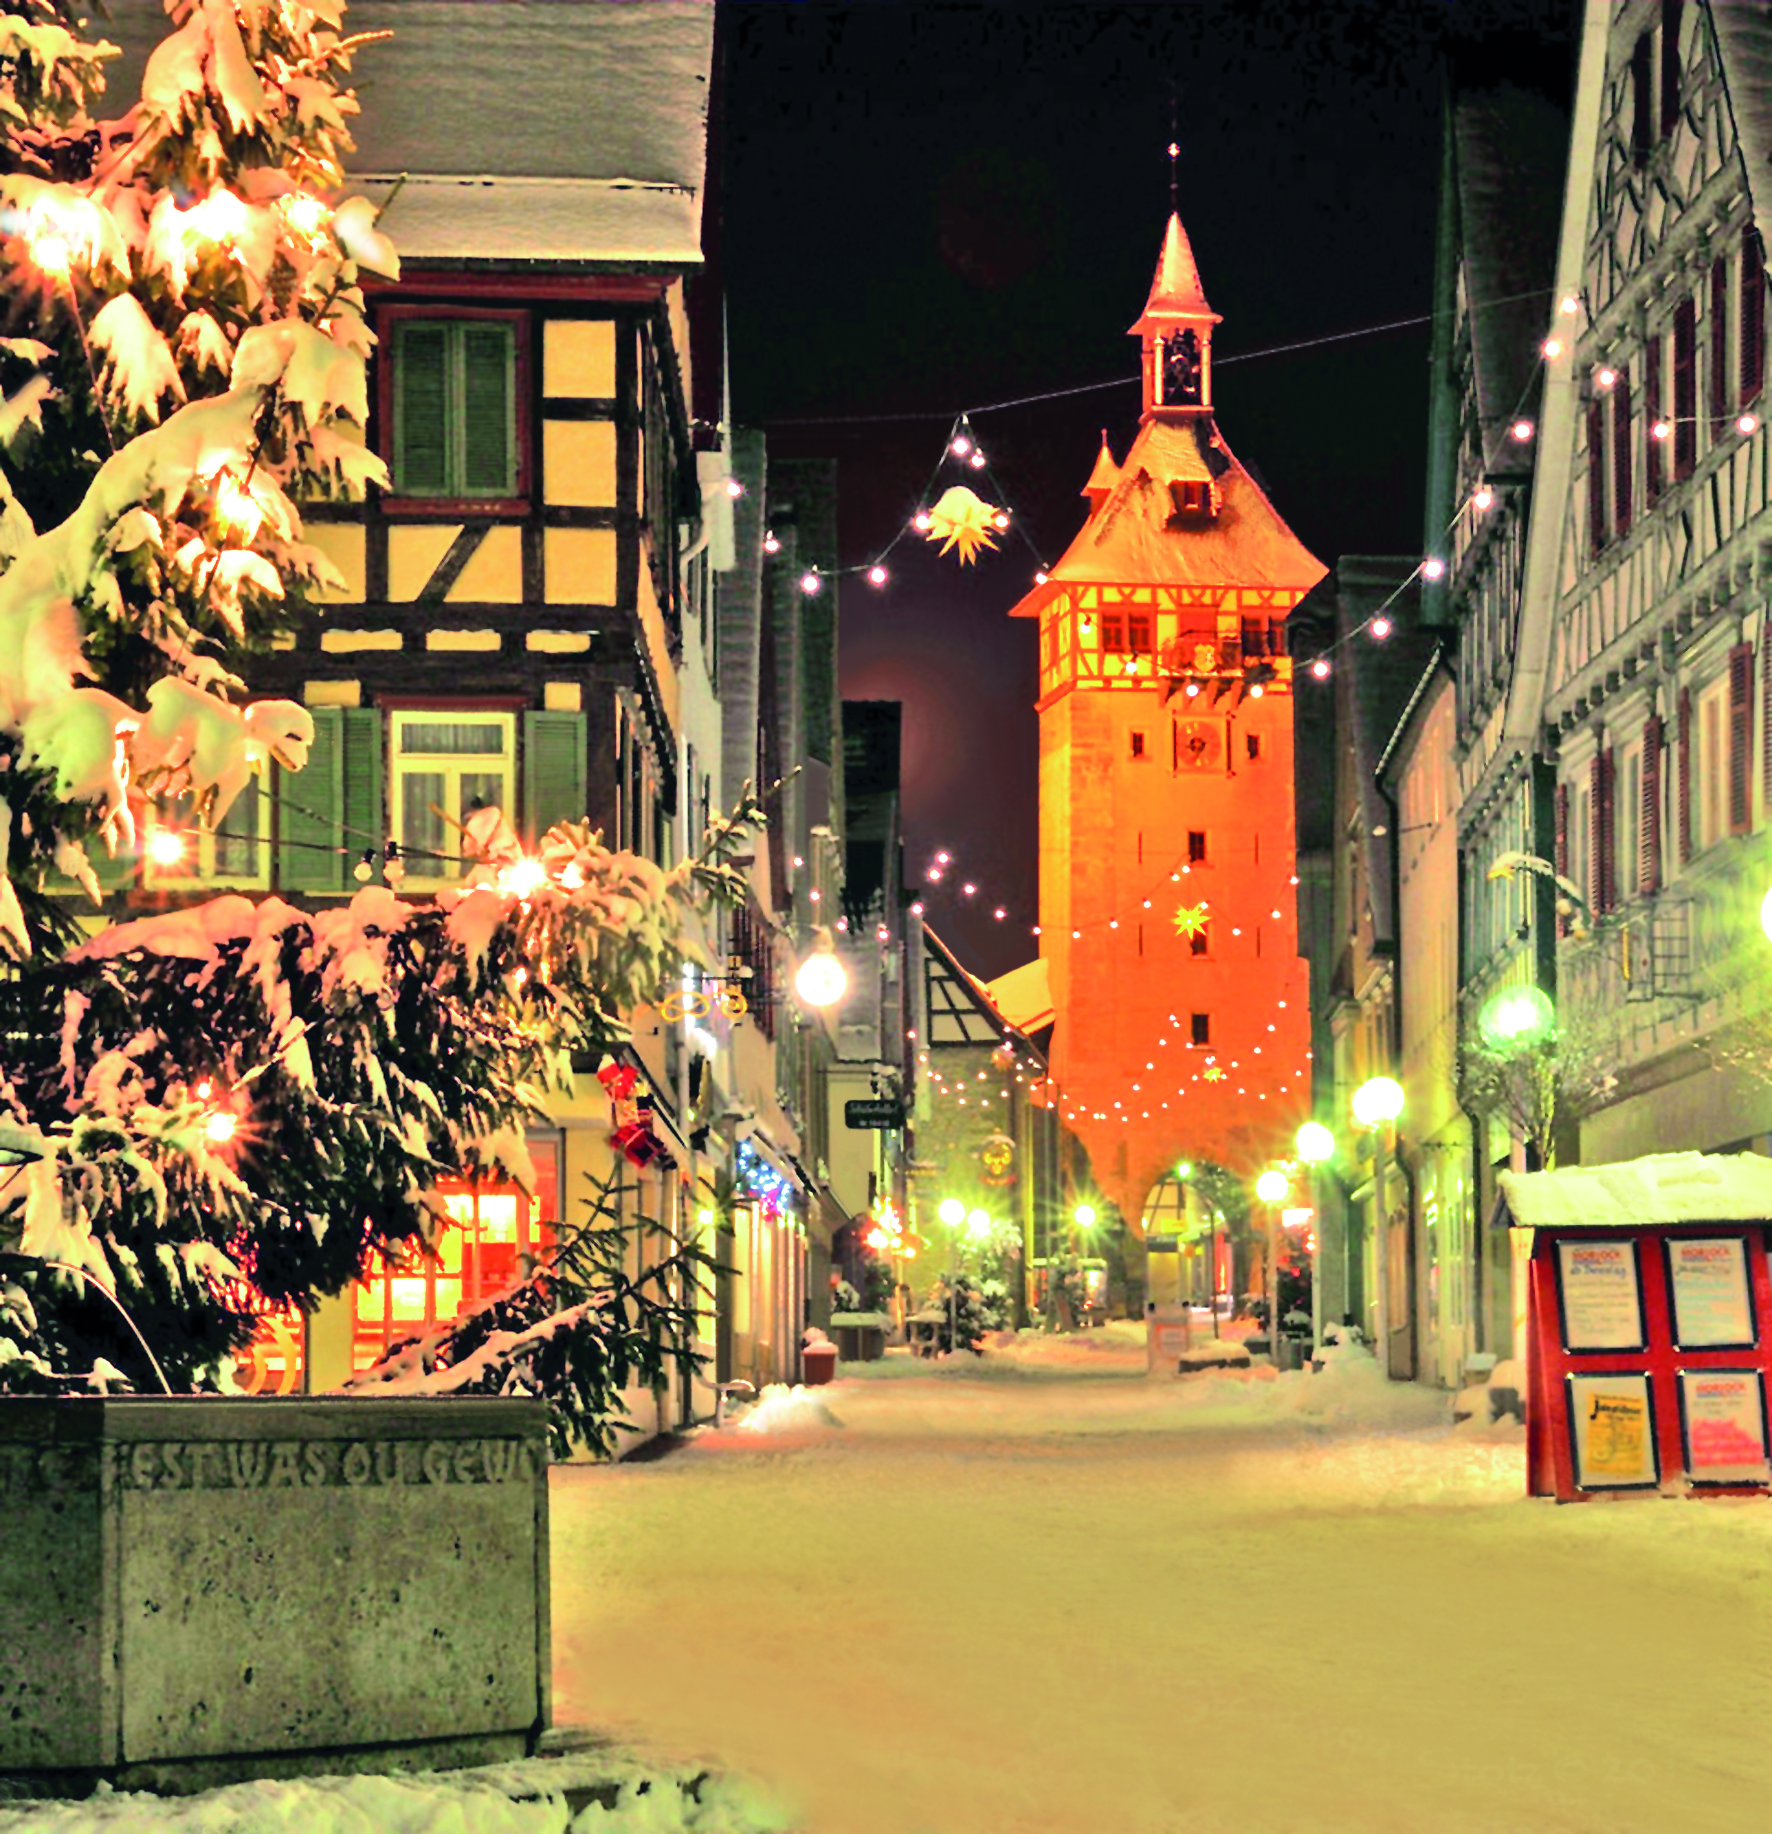 tl_files/bilder/download/Weihnachtsmarkt_Marbach-Foto_TouristikStadt Marbach.jpg